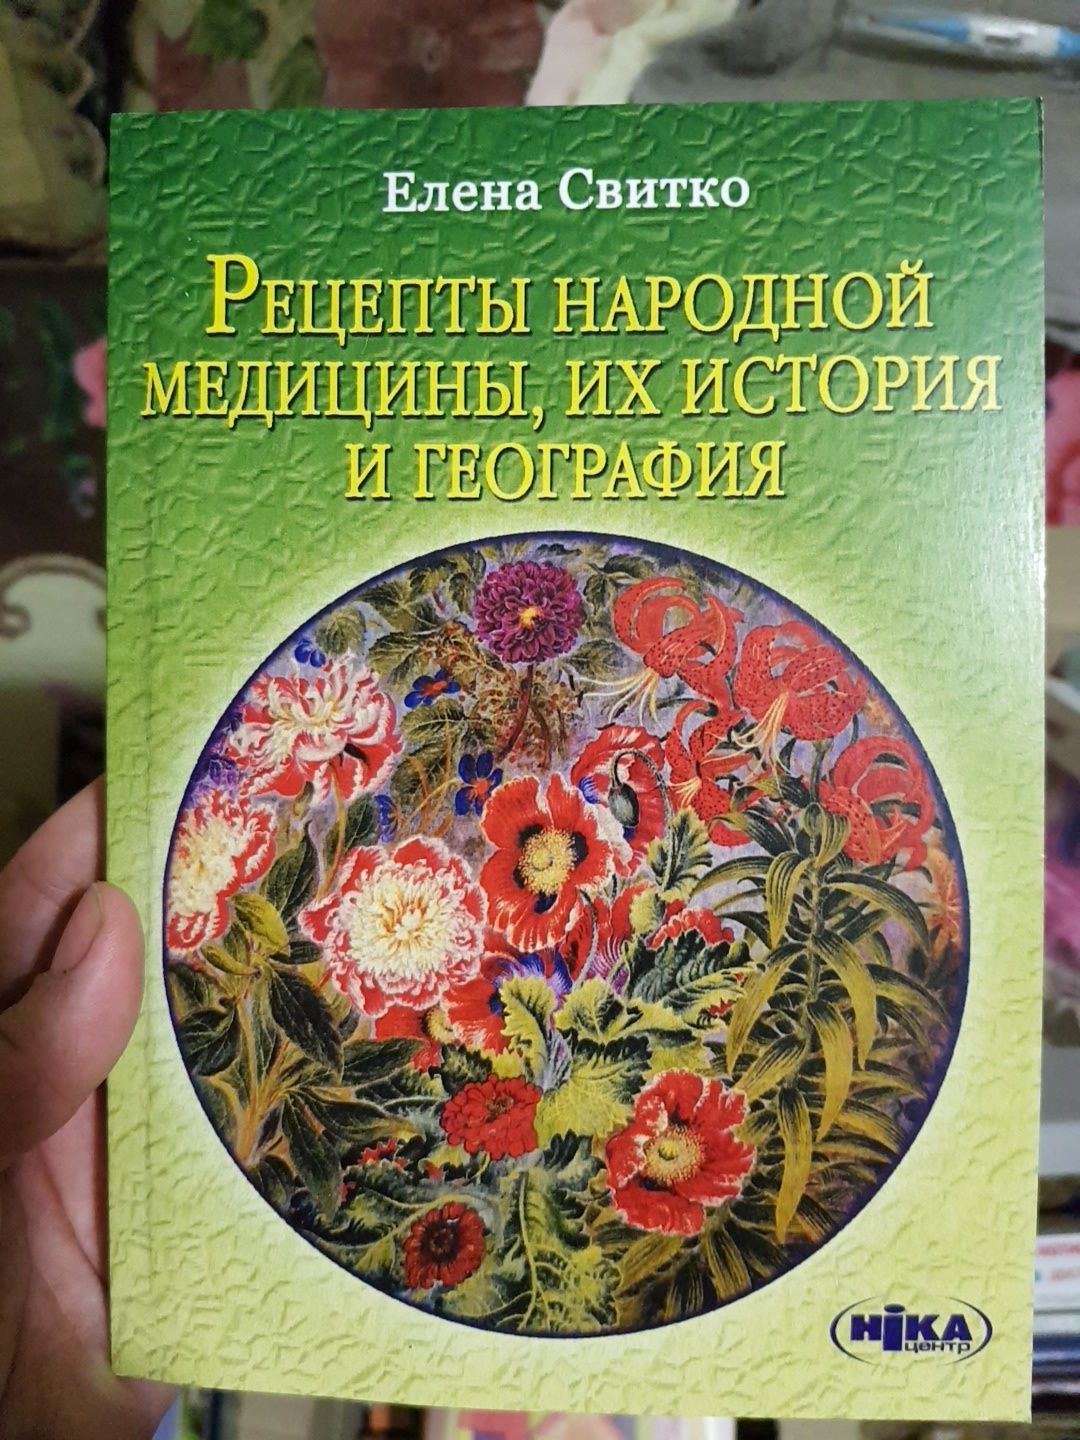 Книги Елены Свитко